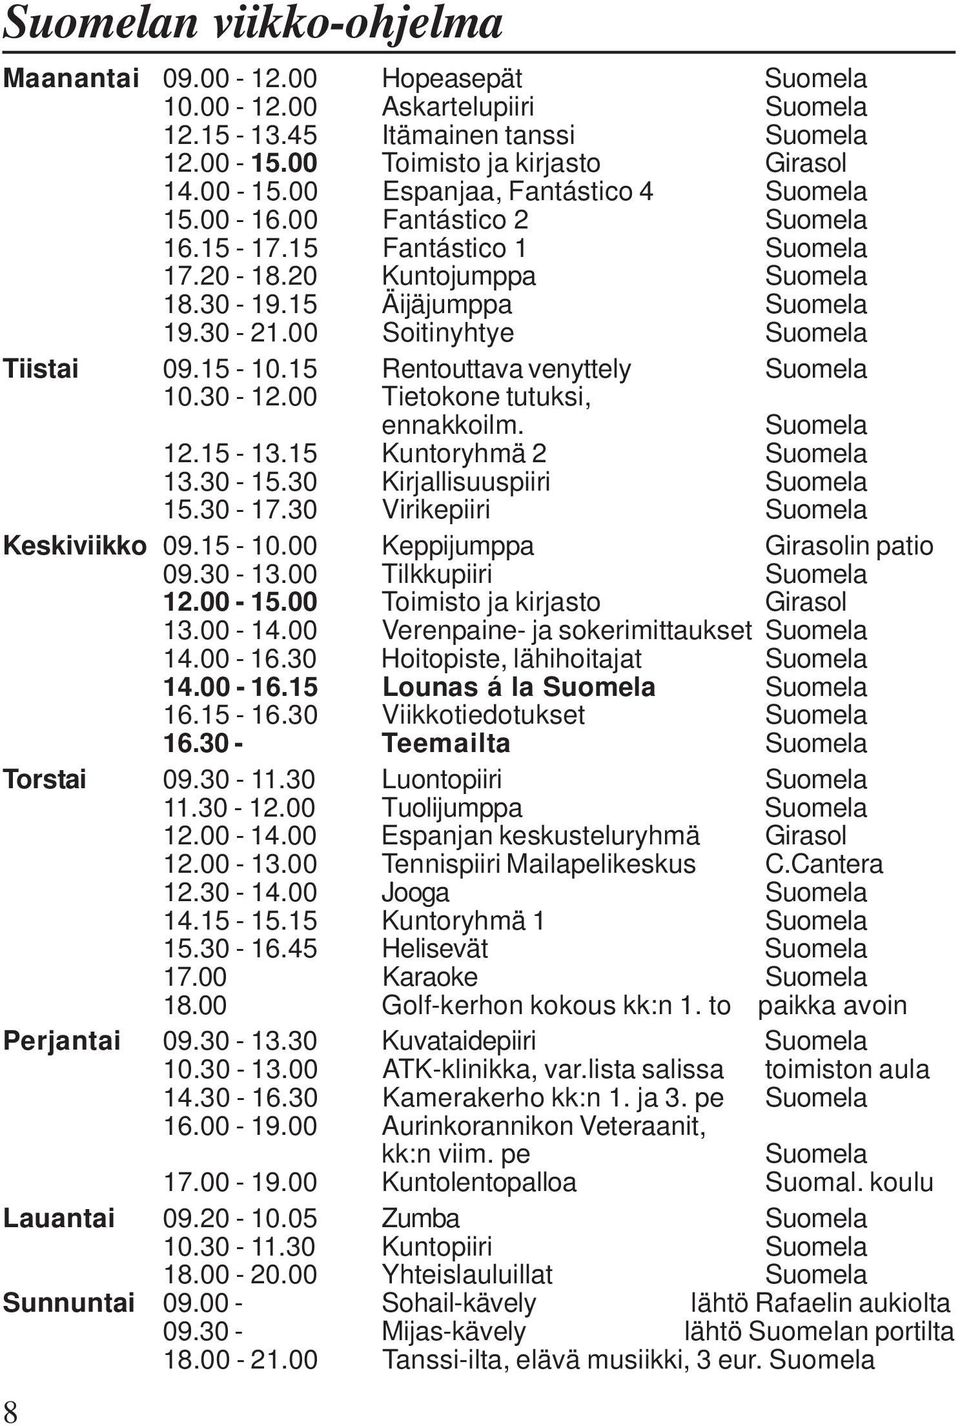 15 Rentouttava venyttely Suomela 10.30-12.00 Tietokone tutuksi, ennakkoilm. Suomela 12.15-13.15 Kuntoryhmä 2 Suomela 13.30-15.30 Kirjallisuuspiiri Suomela 15.30-17.